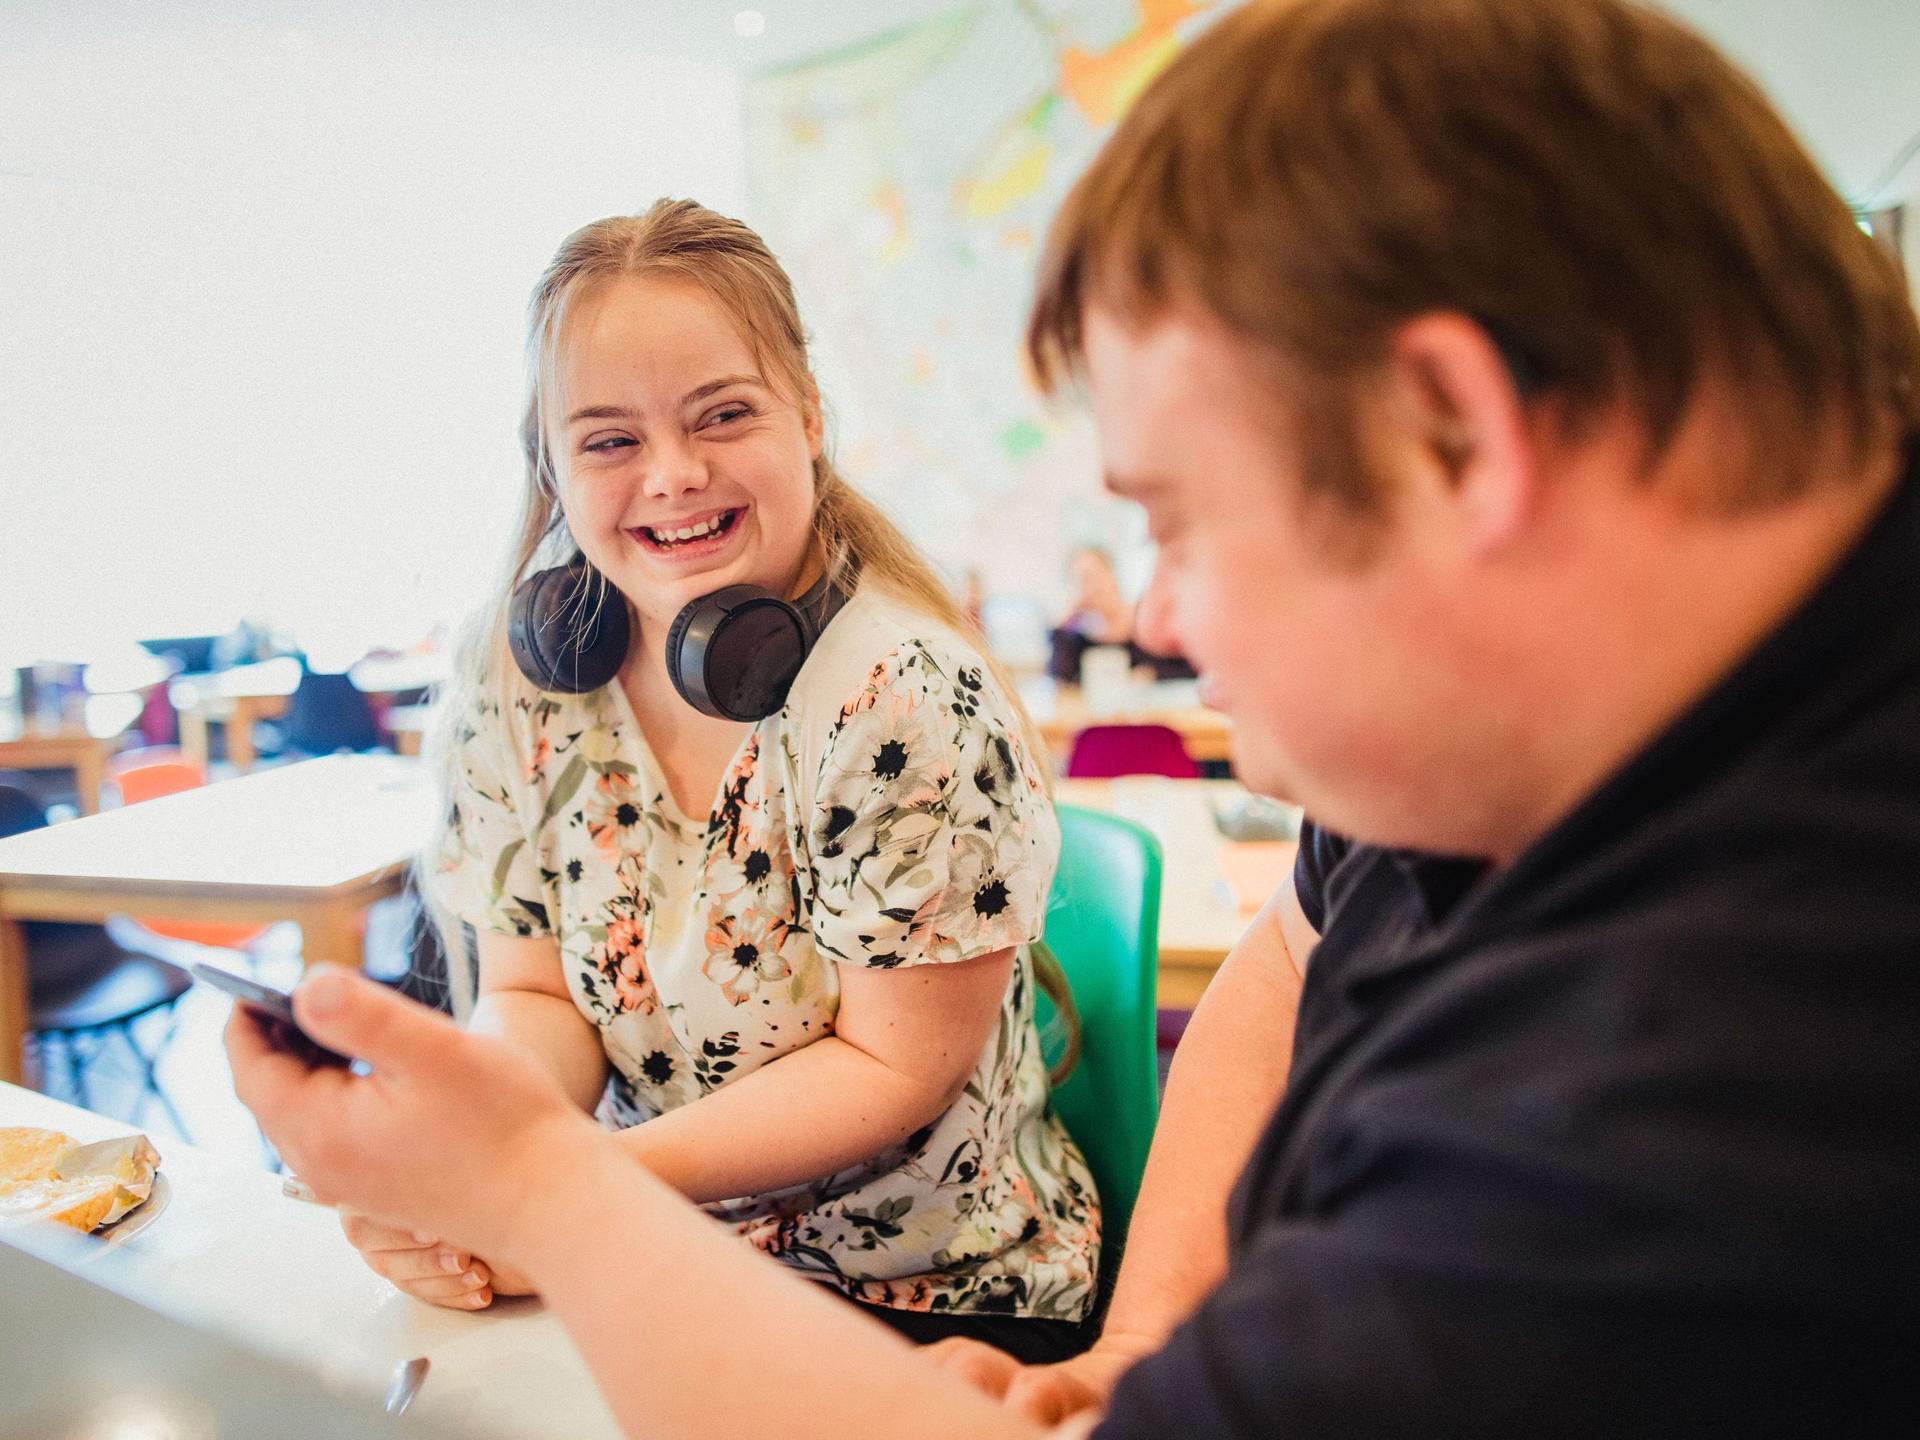 Zwei junge Menschen sitzen in einem Klassenzimmer, unterhalten sich lachend und schauen gemeinsam in ein Smartphone.